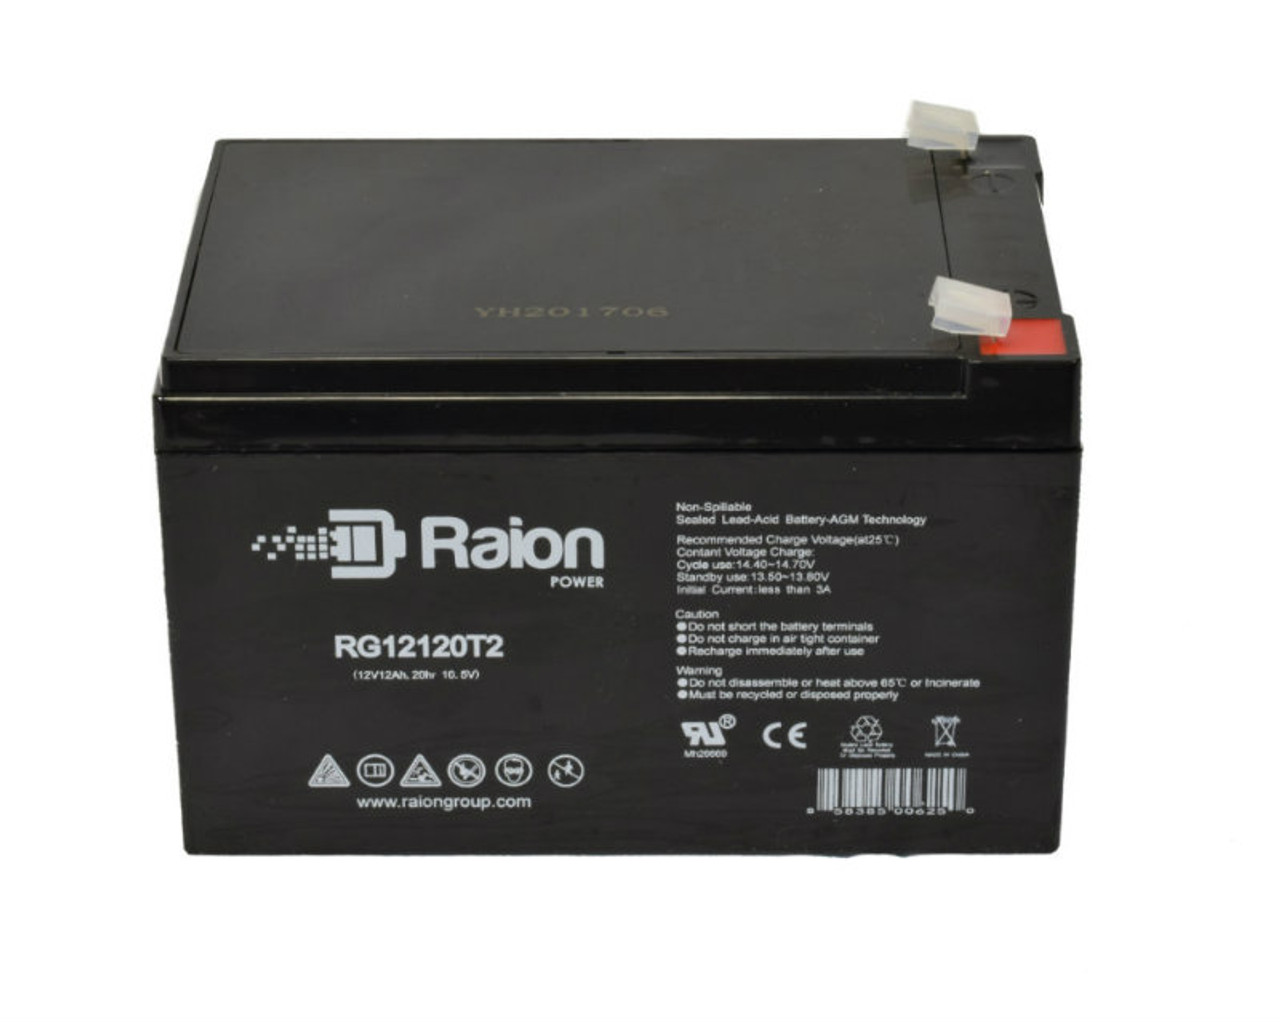 Raion Power RG12120T2 SLA Battery for Mongoose HG1000